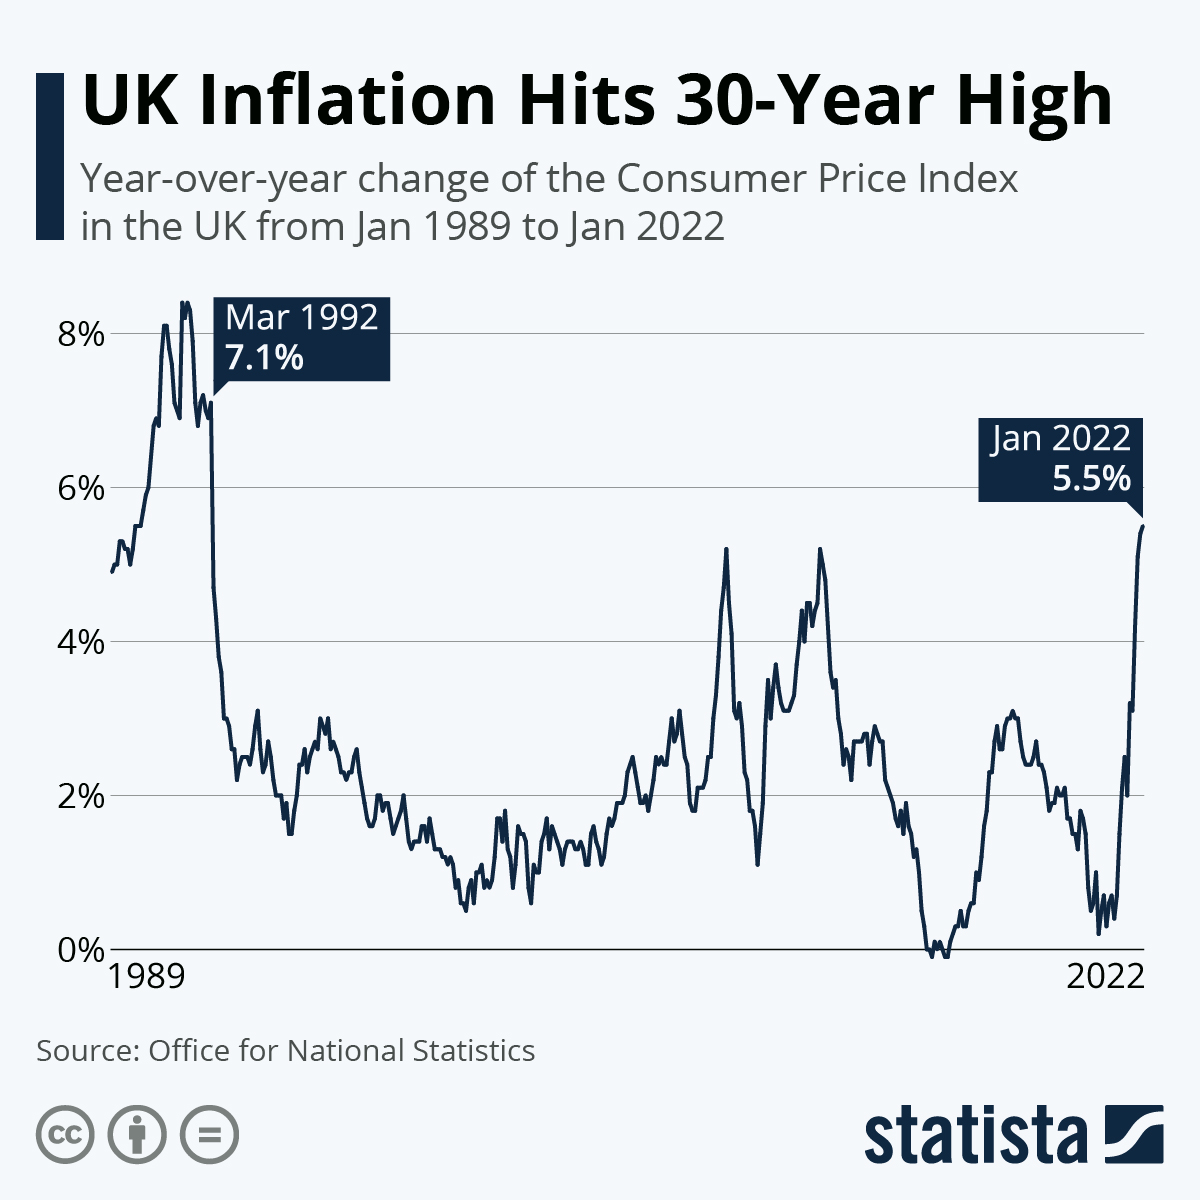 U.K. Inflation Hits 30-Year High
